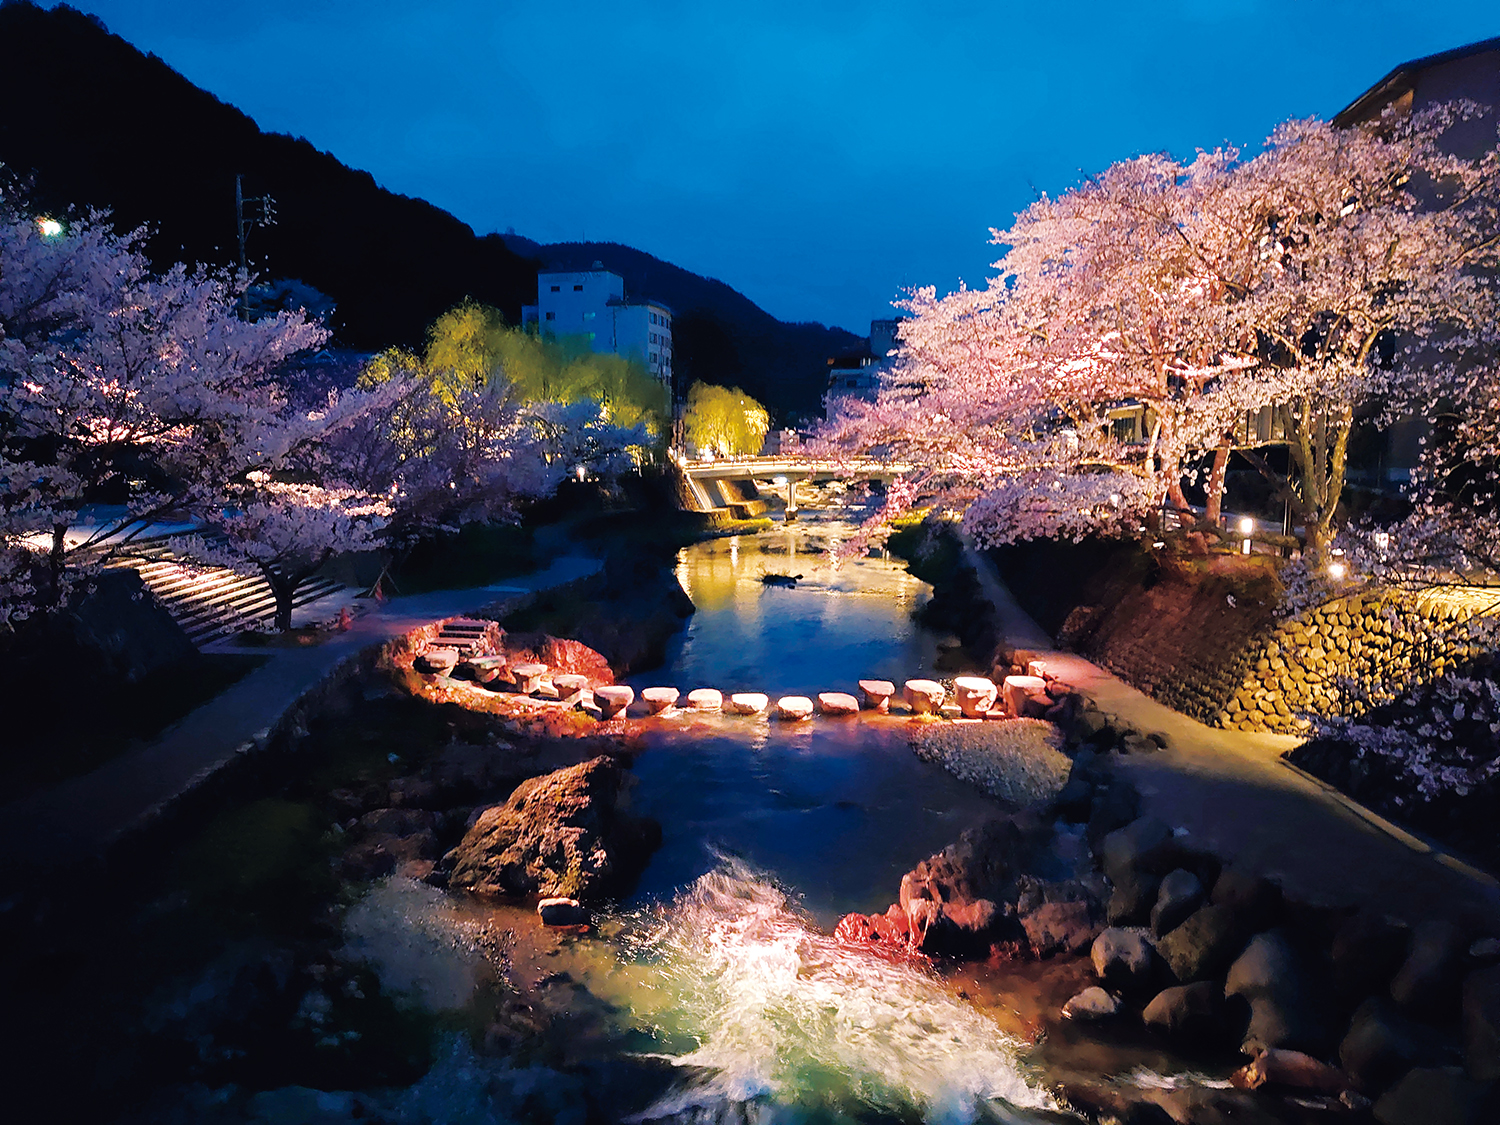 長門湯本温泉『界 長門』の前には音信川の桜並木。桜の花だけを浮き立たせる照明の夜桜は必見だ。